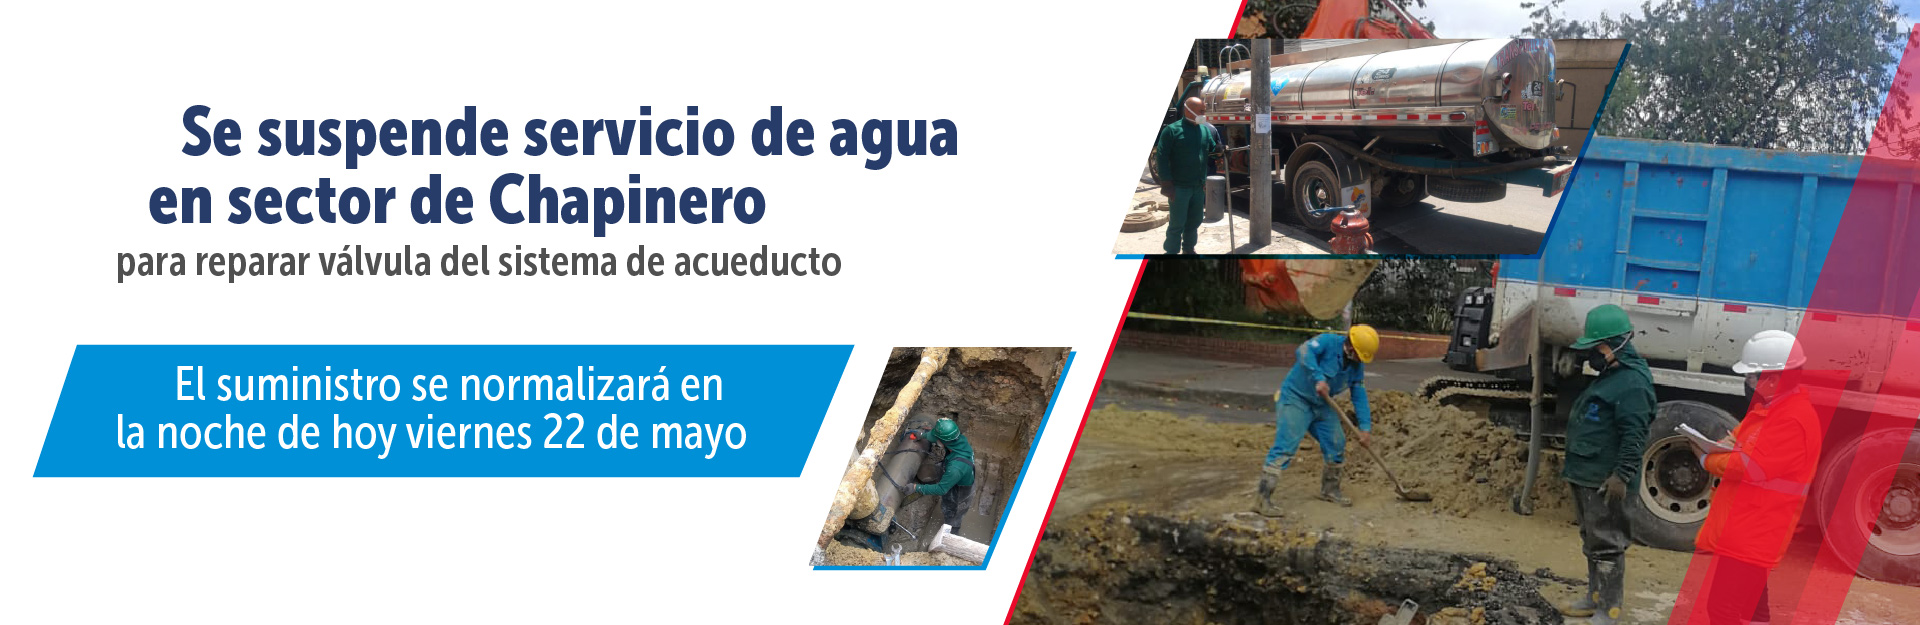 Se suspende servicio de agua en sector de Chapinero para reparar válvula del sistema de acueducto